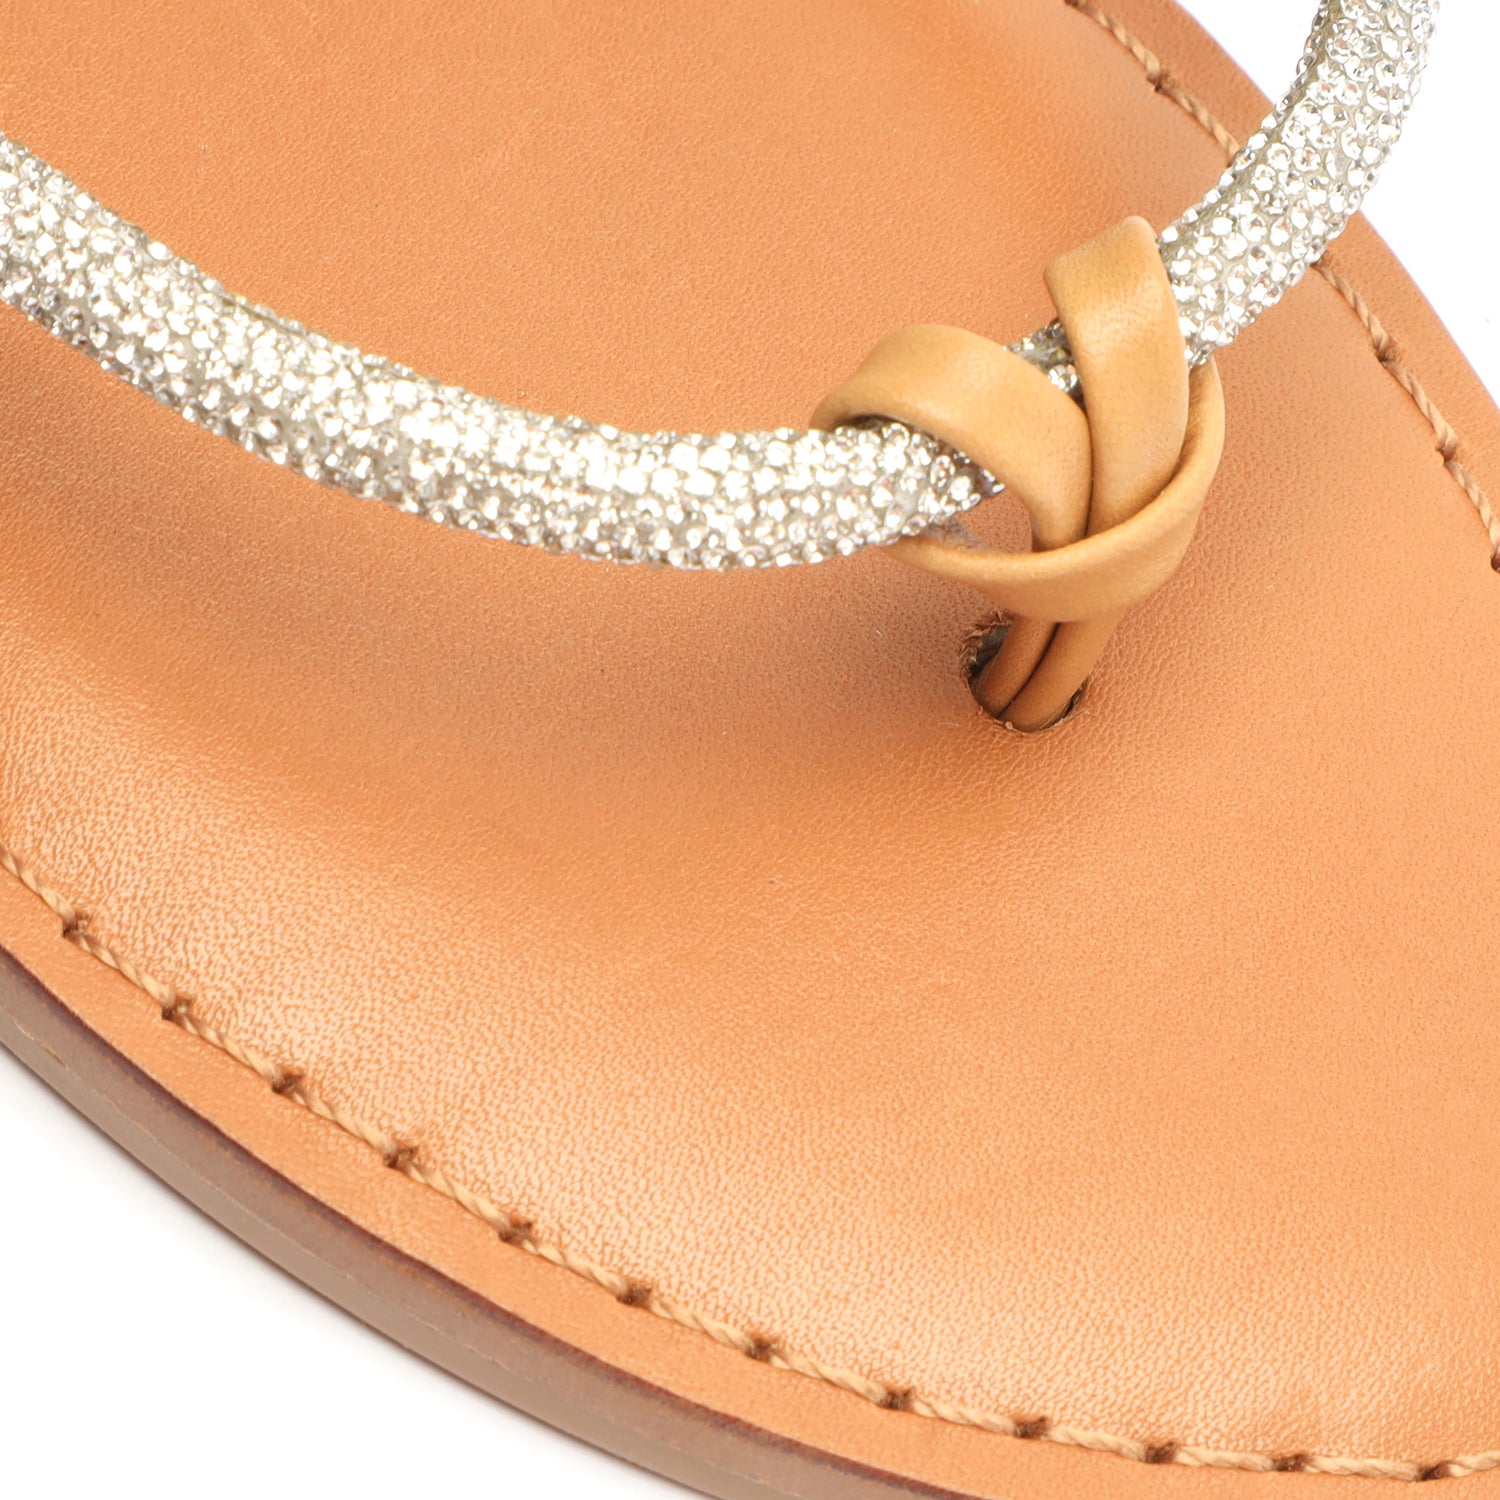 Kittie Glam Sandal Flats SUMMER 24    - Schutz Shoes